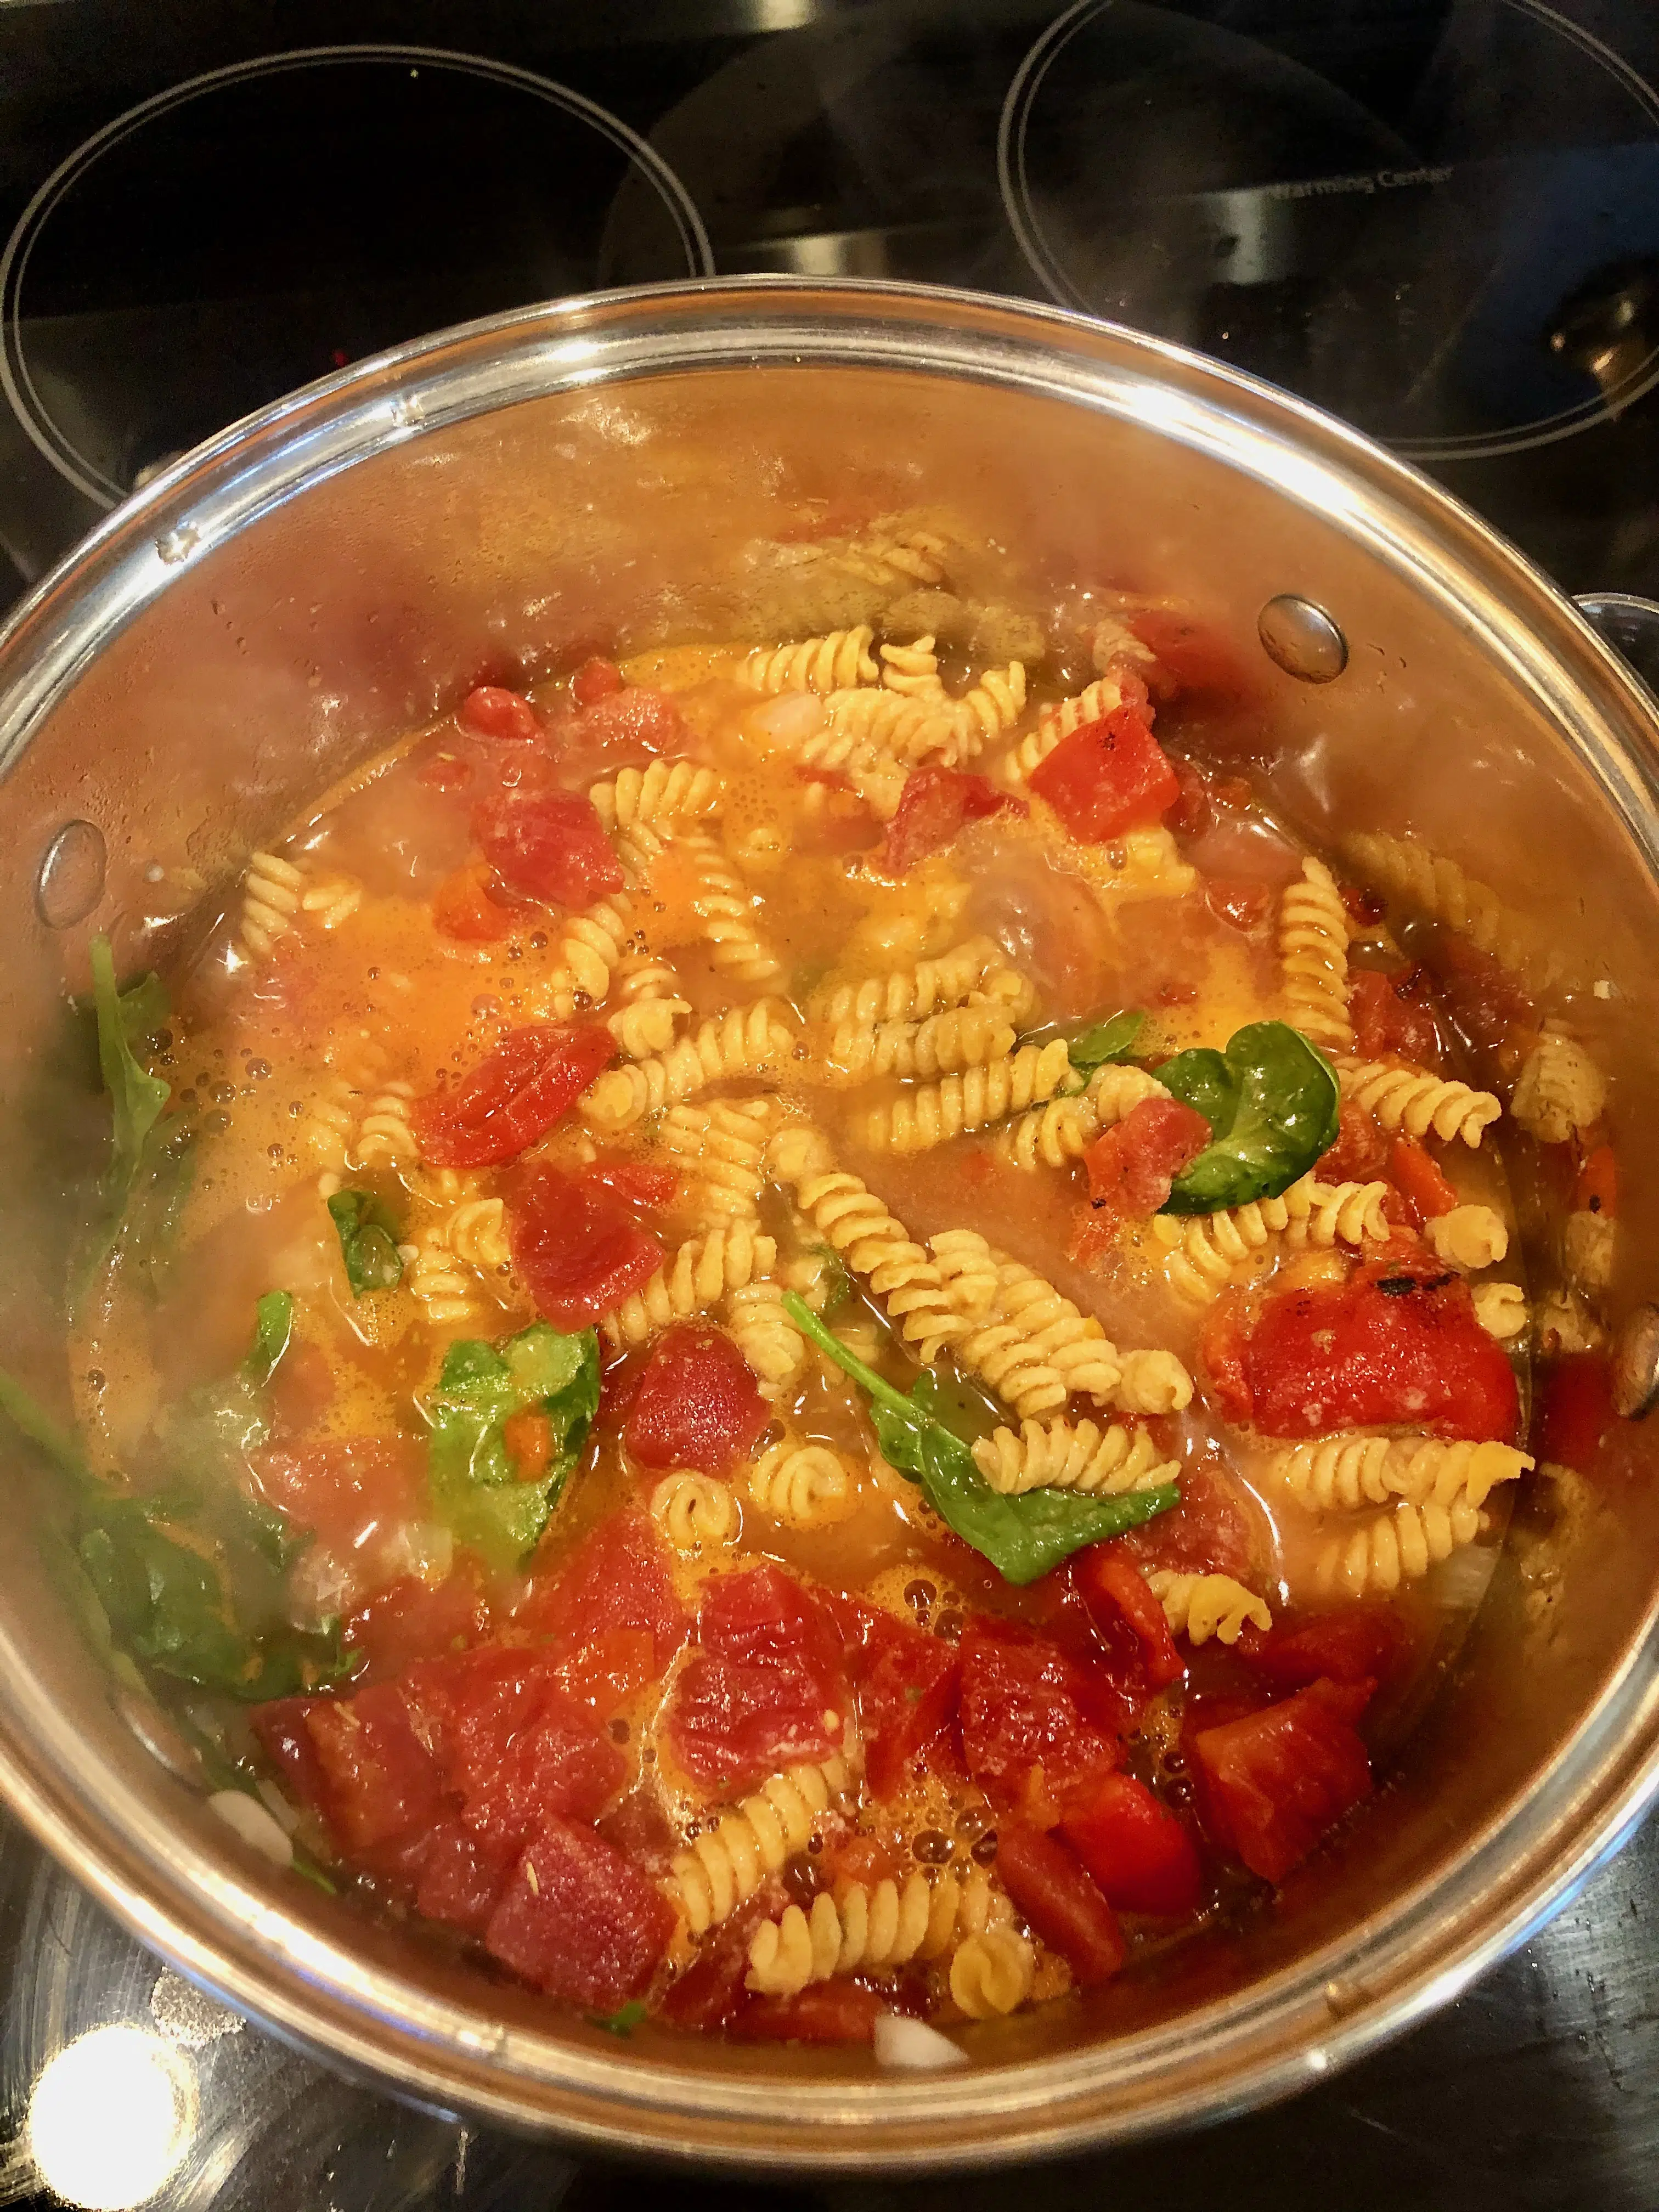 Adding over pasta